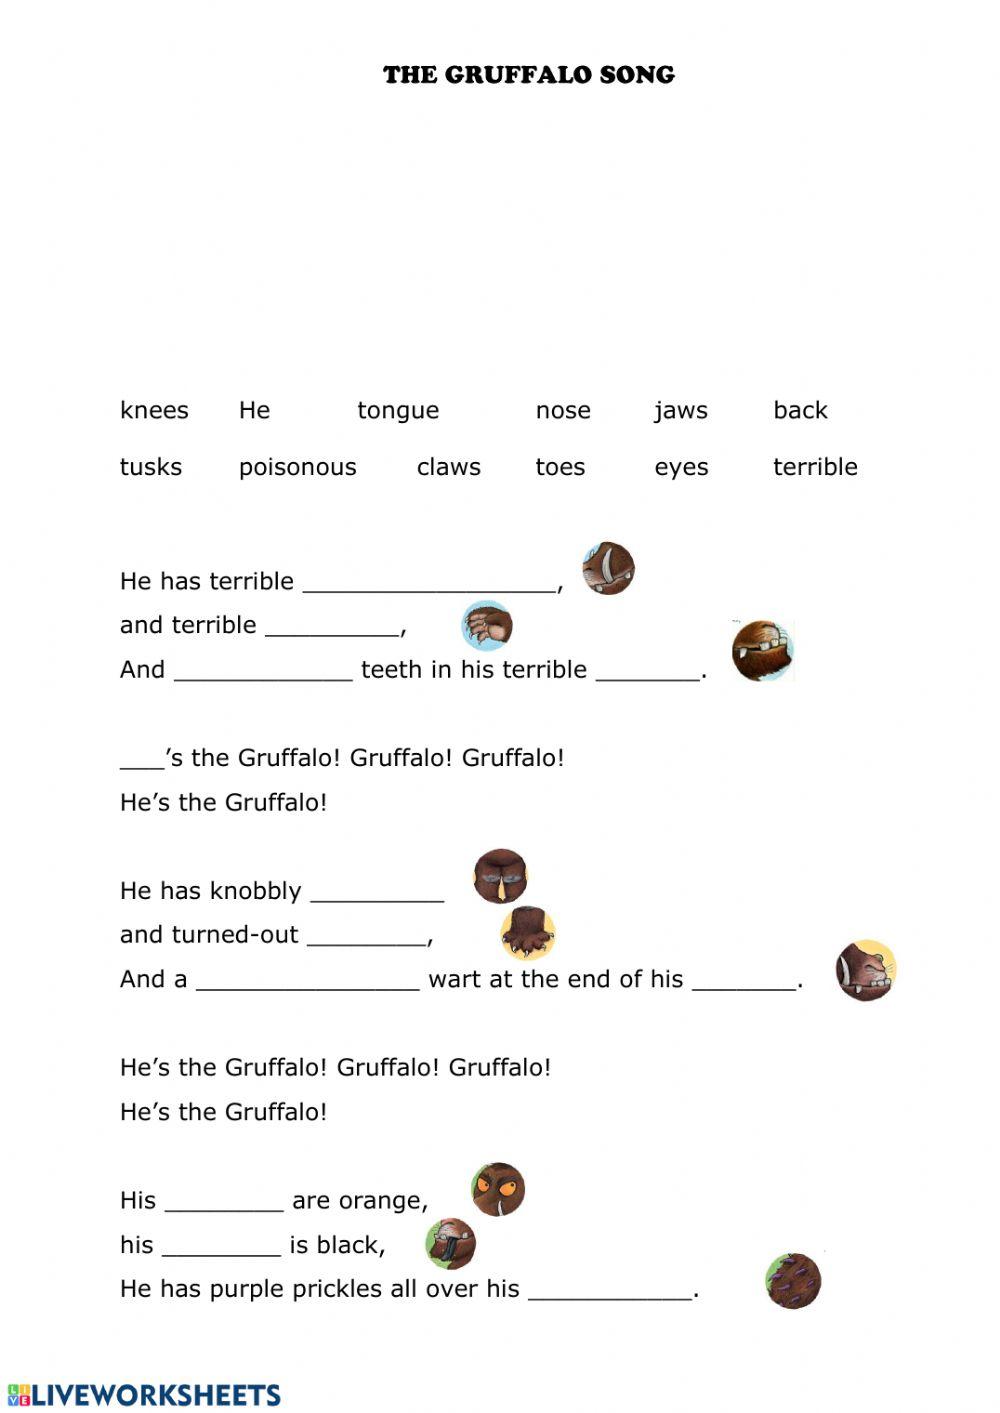 The Gruffalo song